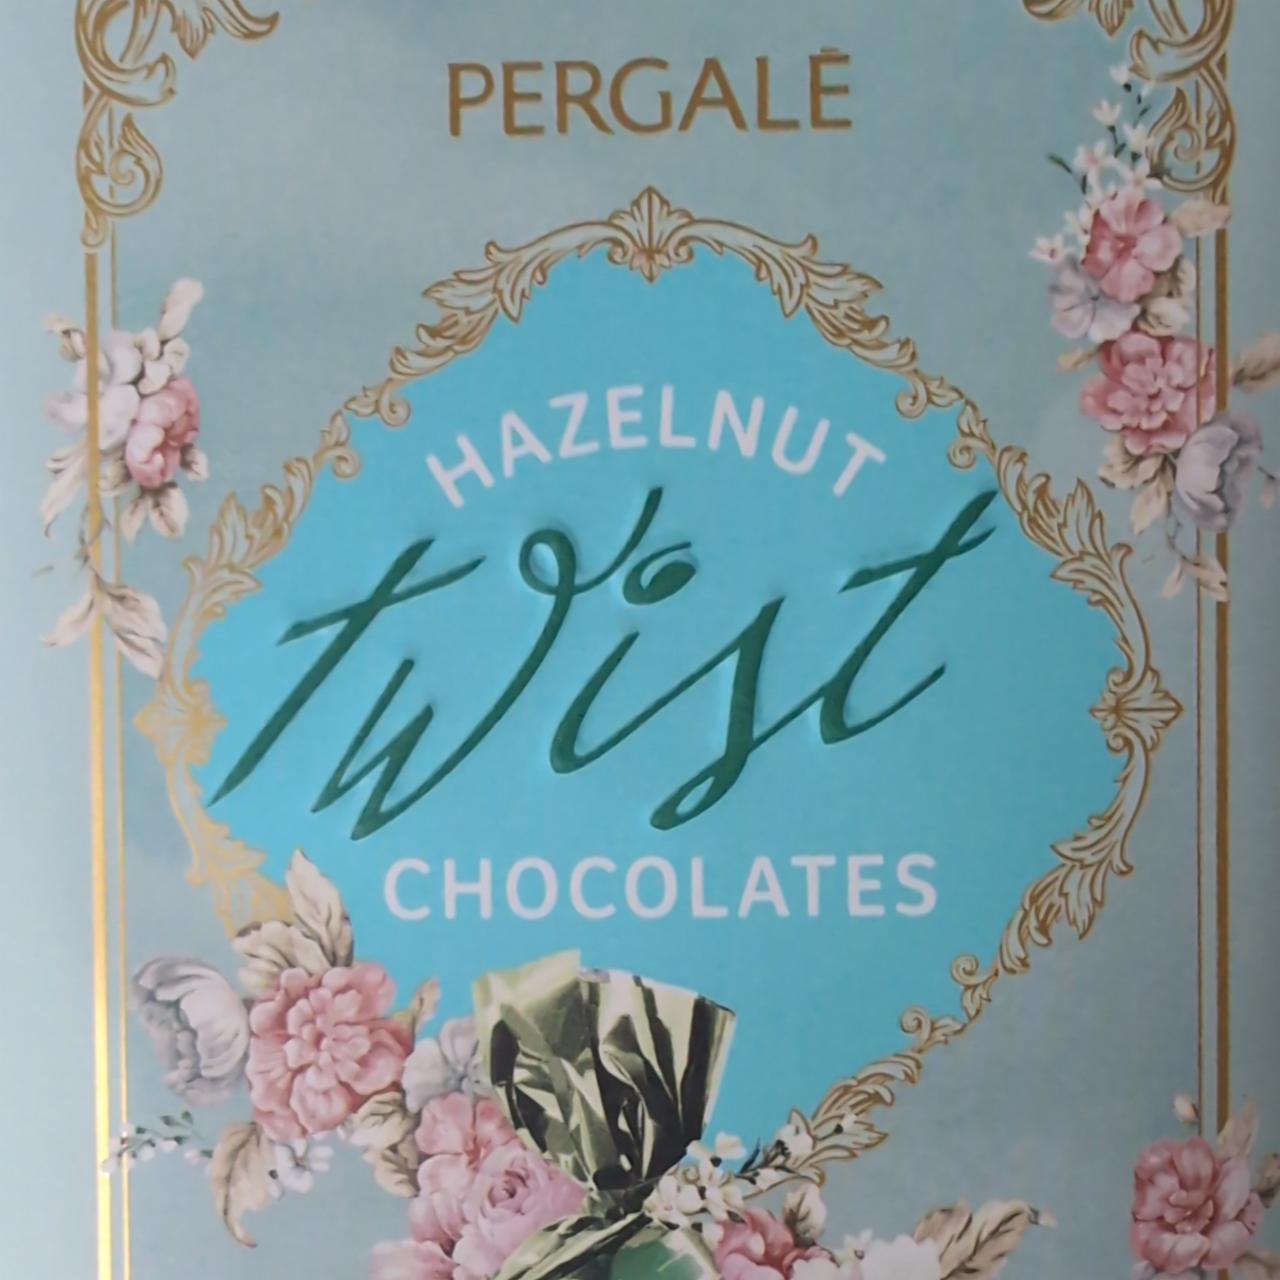 Zdjęcia - Hazelnut Twist Chocolates Pergale